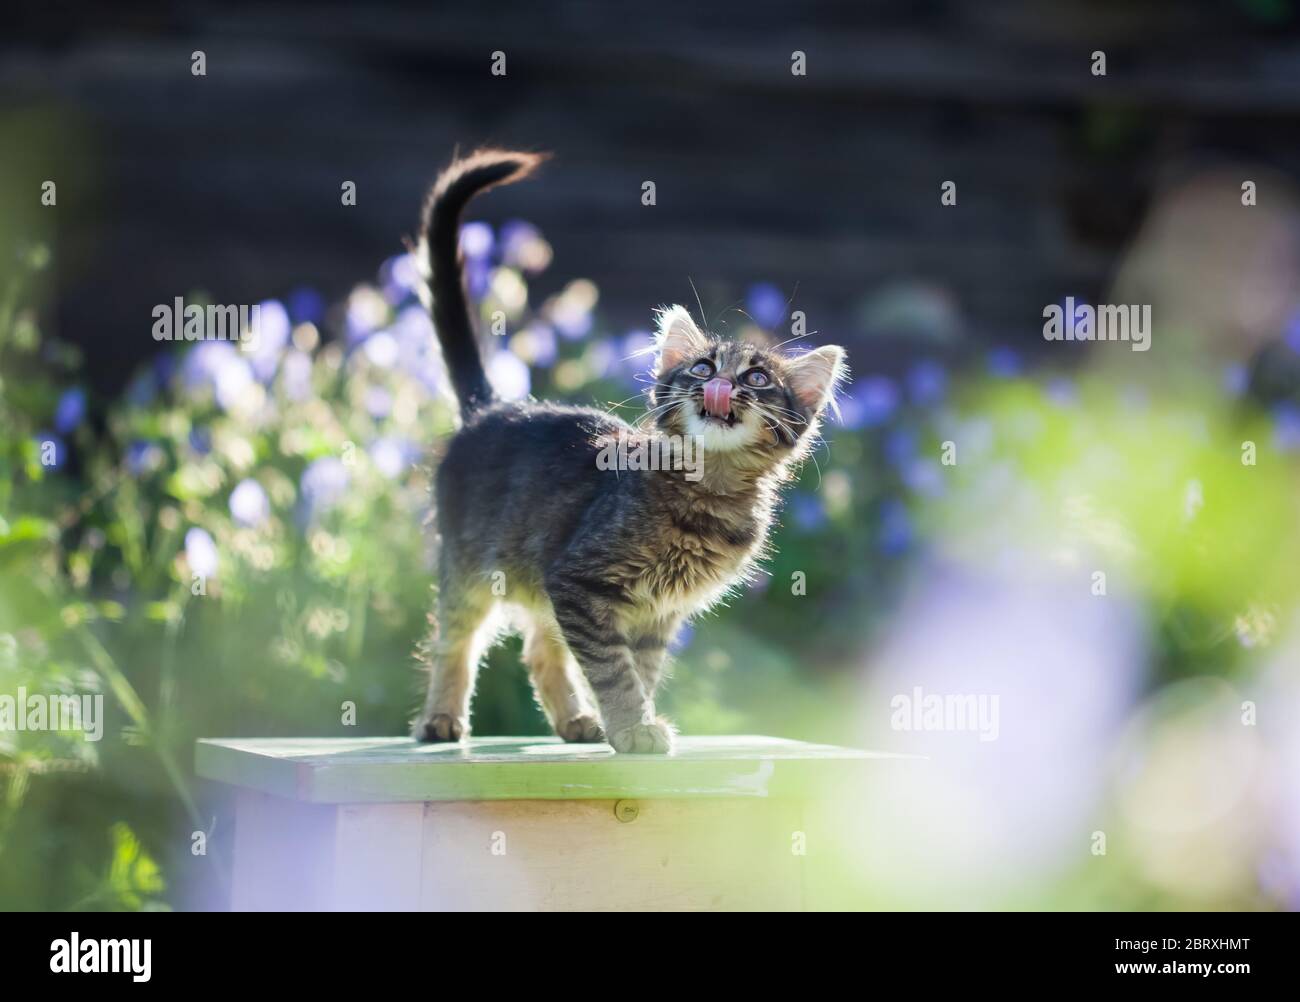 Cute little kitten in the garden, purple flowers in the background Stock Photo